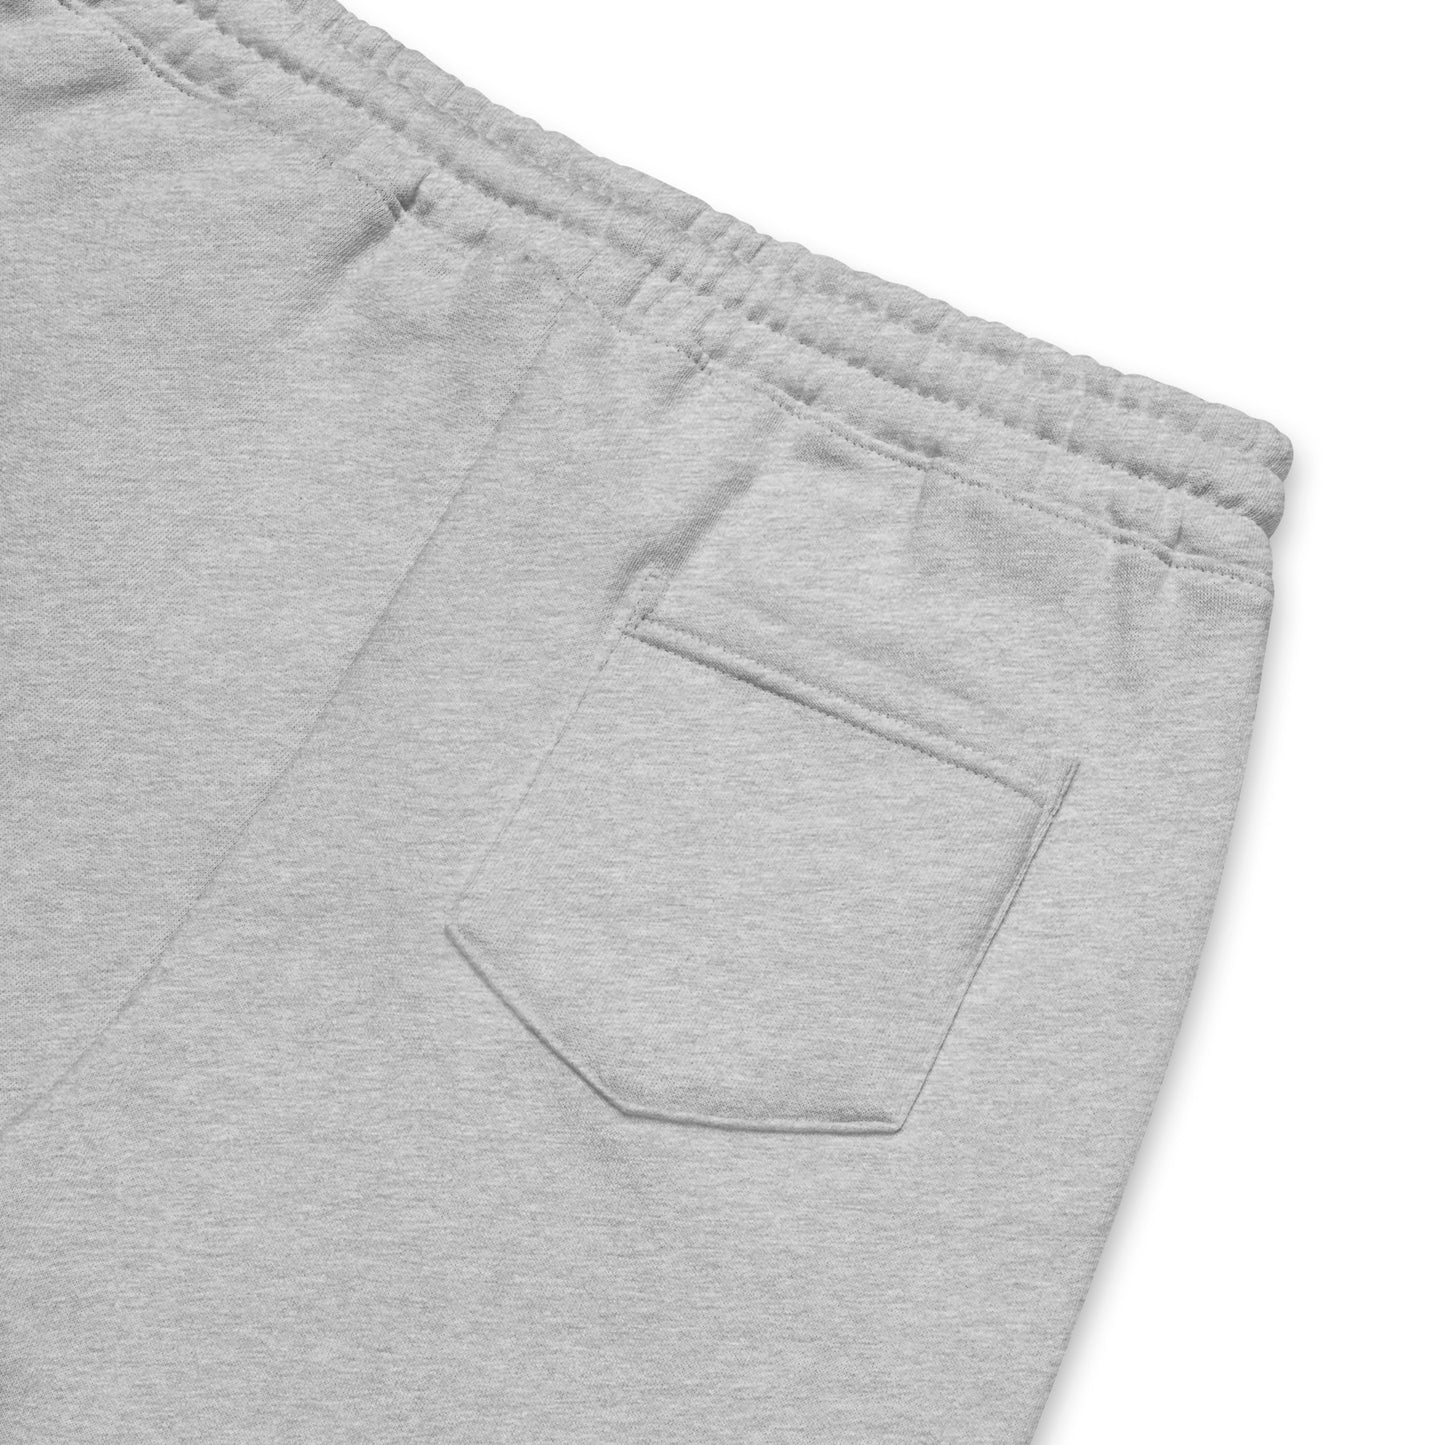 Mono Men's Fleece Shorts